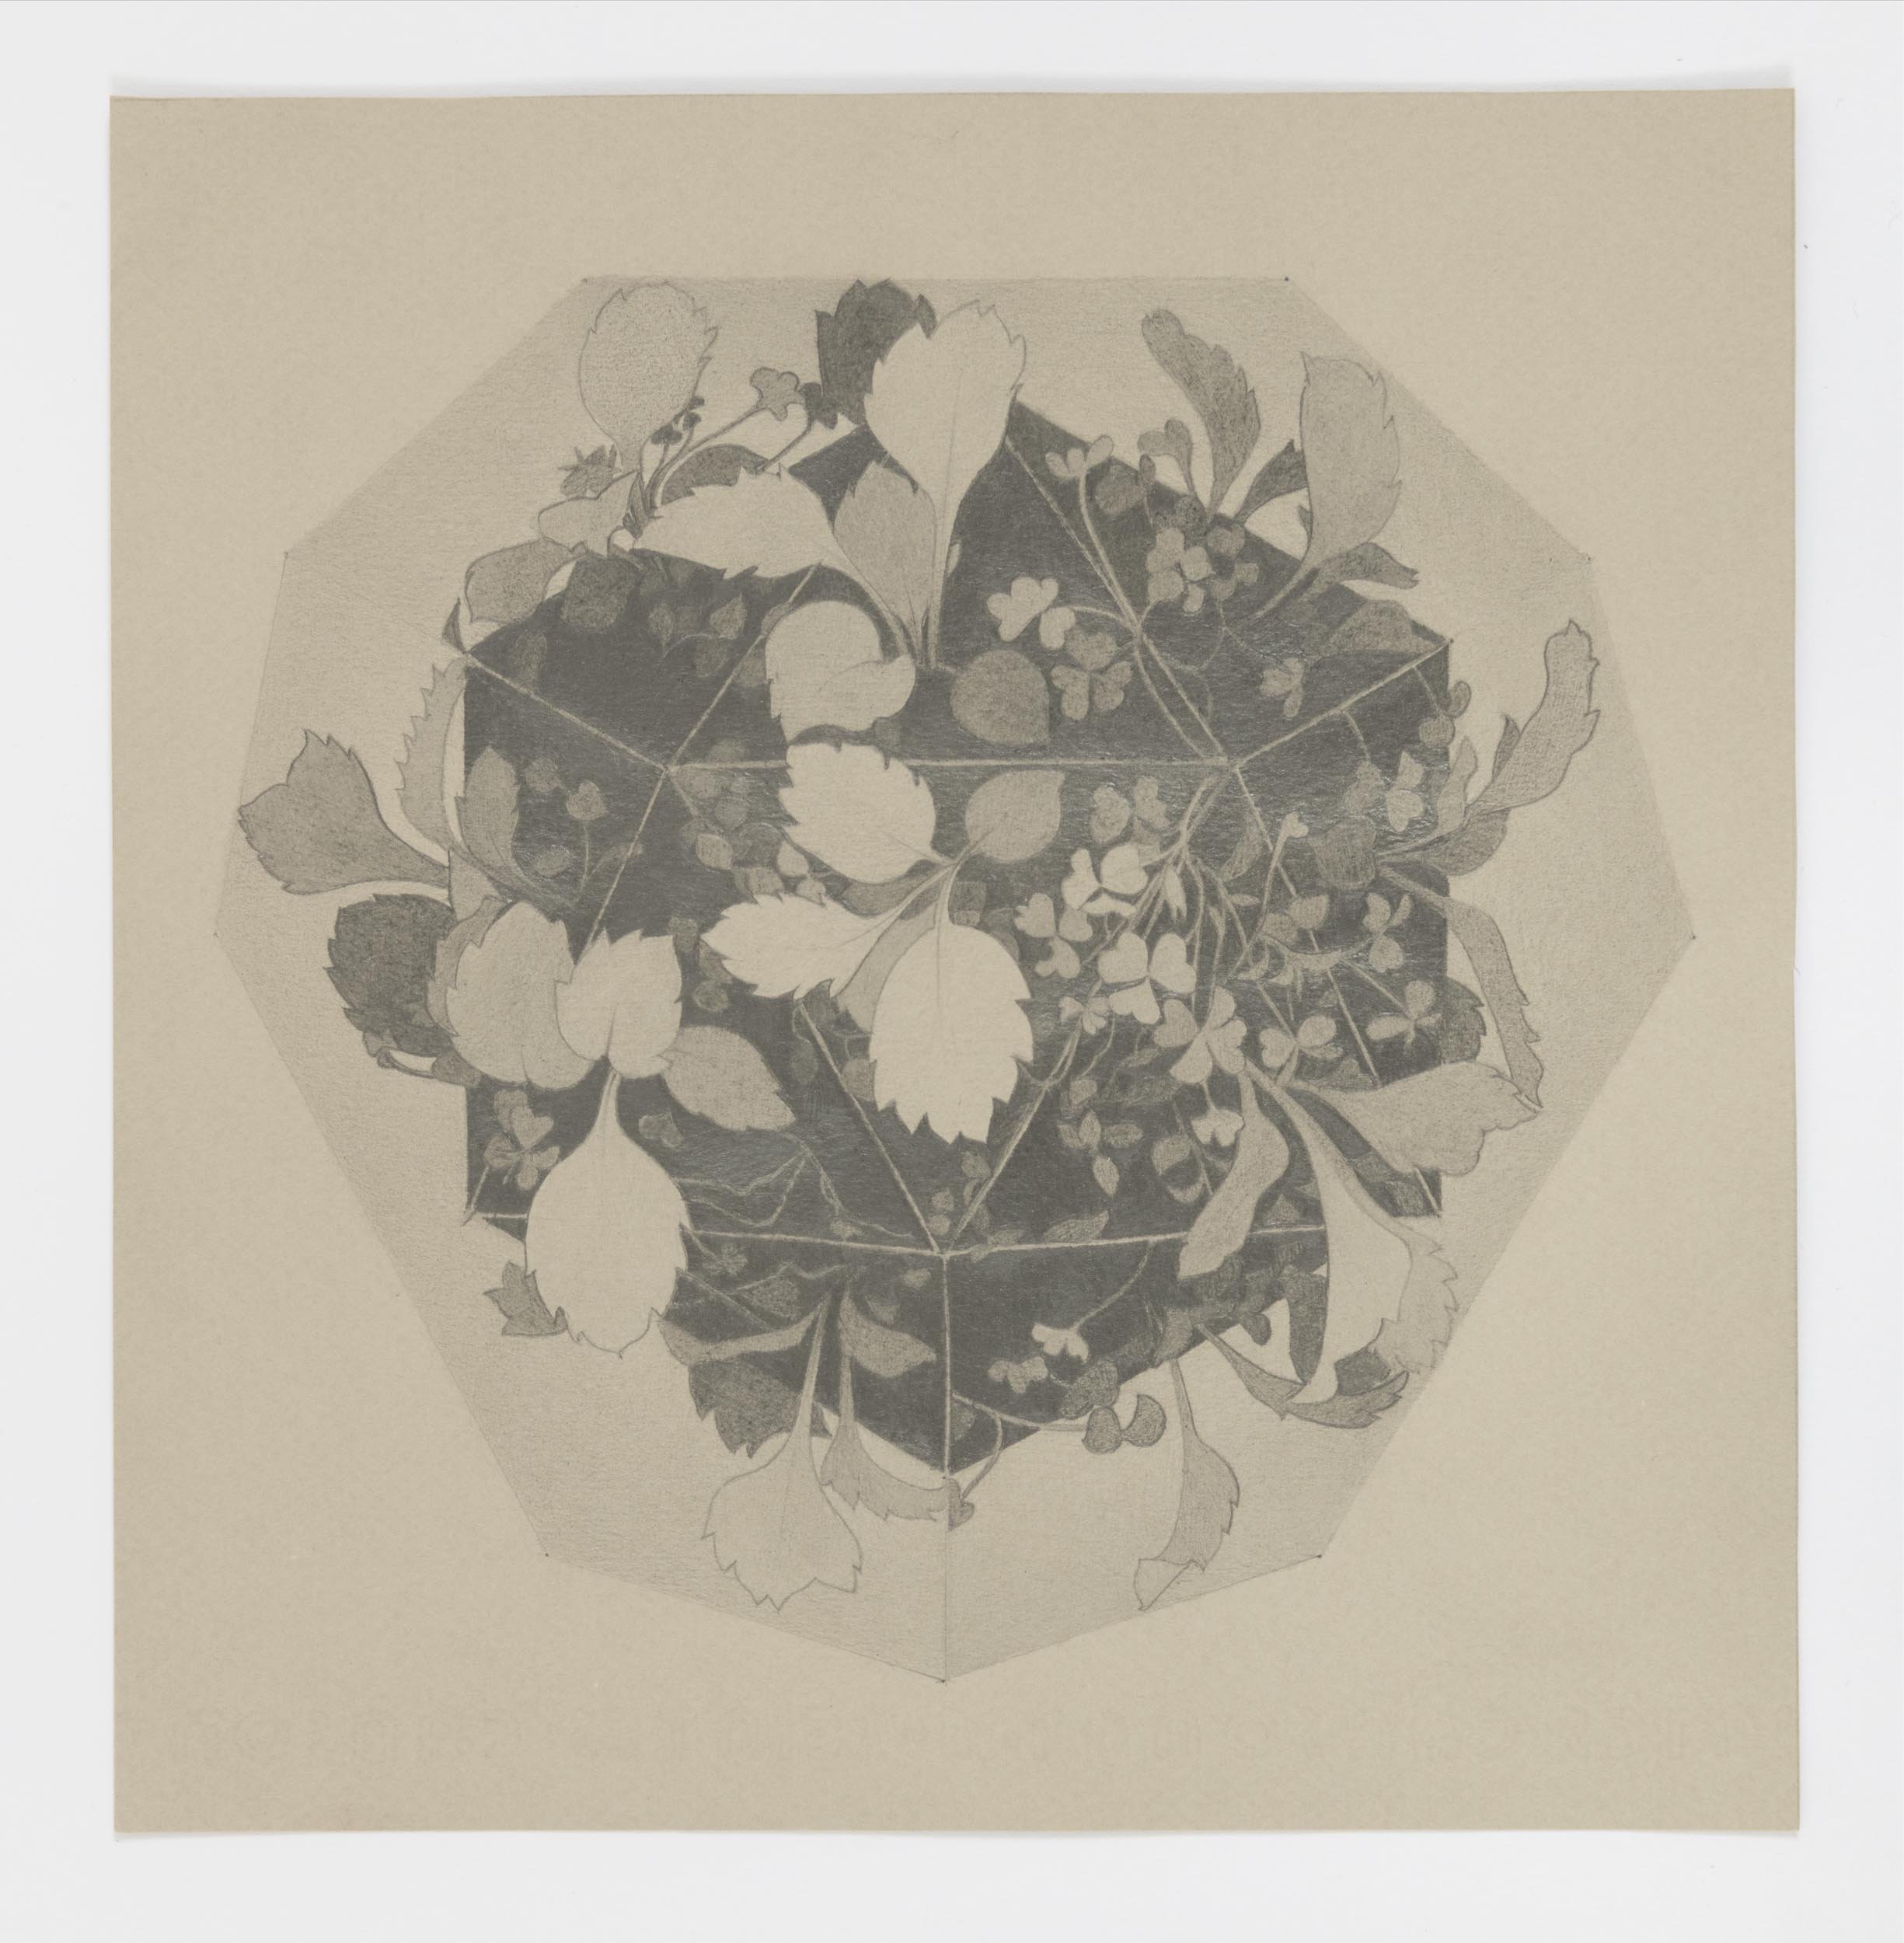  Hexagon Garden 4, 2018 graphite on paper 8.5 x 8.25 in. &nbsp; 22 x 21 cm 